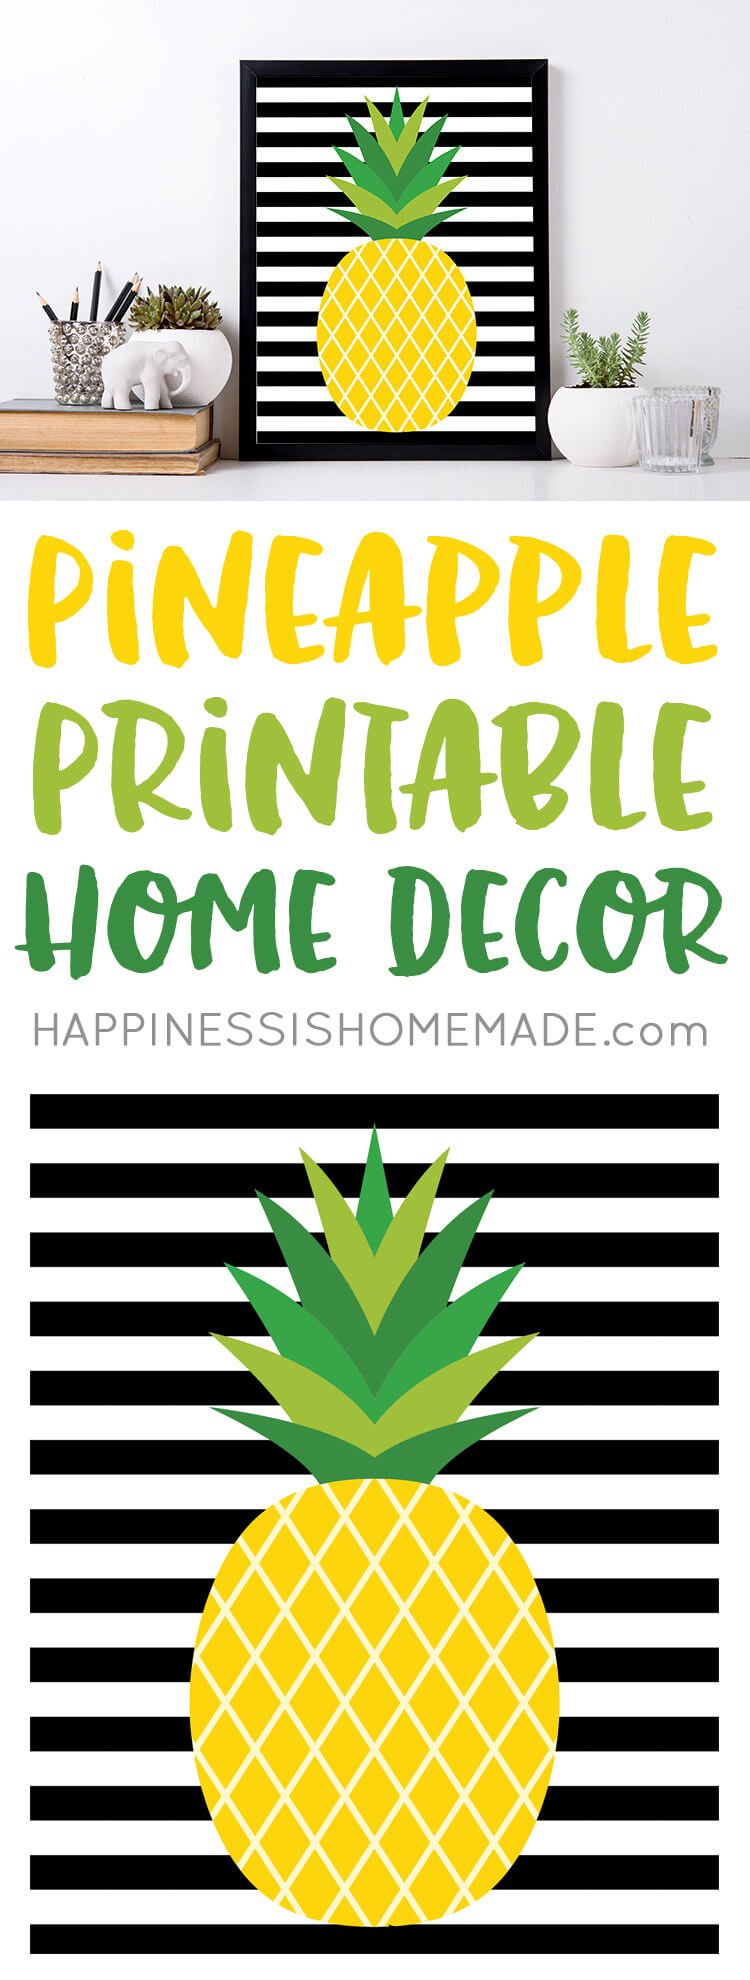 pineapple printable home decor